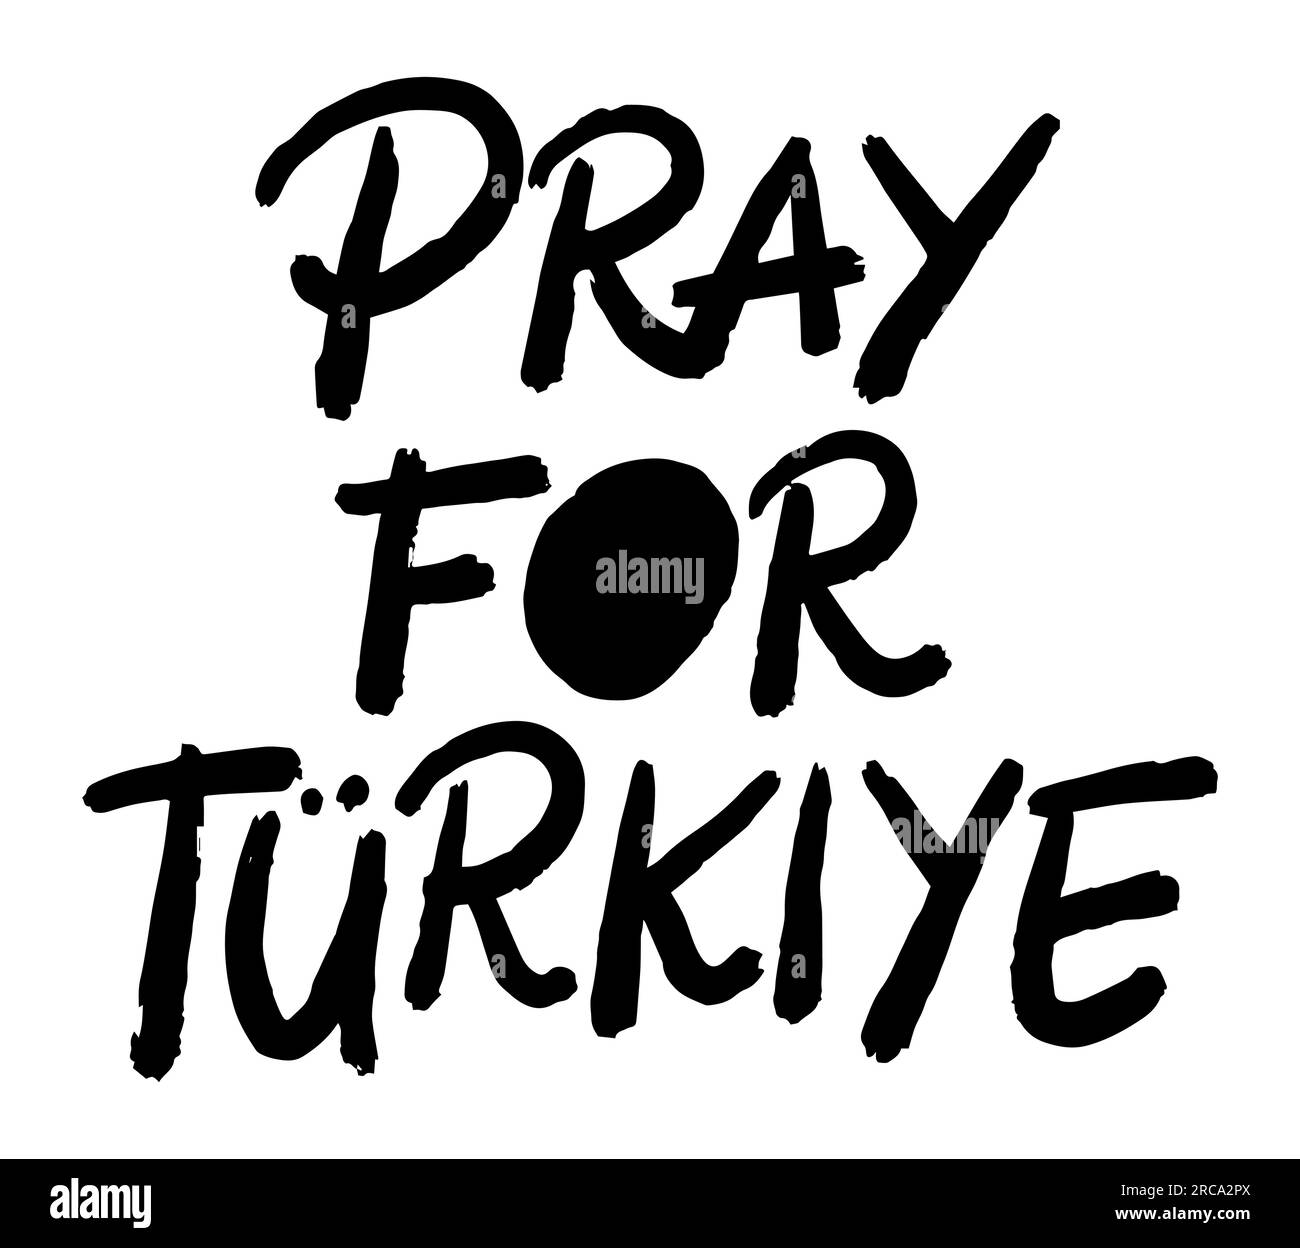 Priez pour la Turquie citer la typographie, le texte de police, illustration vectorielle isolée sur fond blanc, Turkiye, message de sensibilisation Illustration de Vecteur